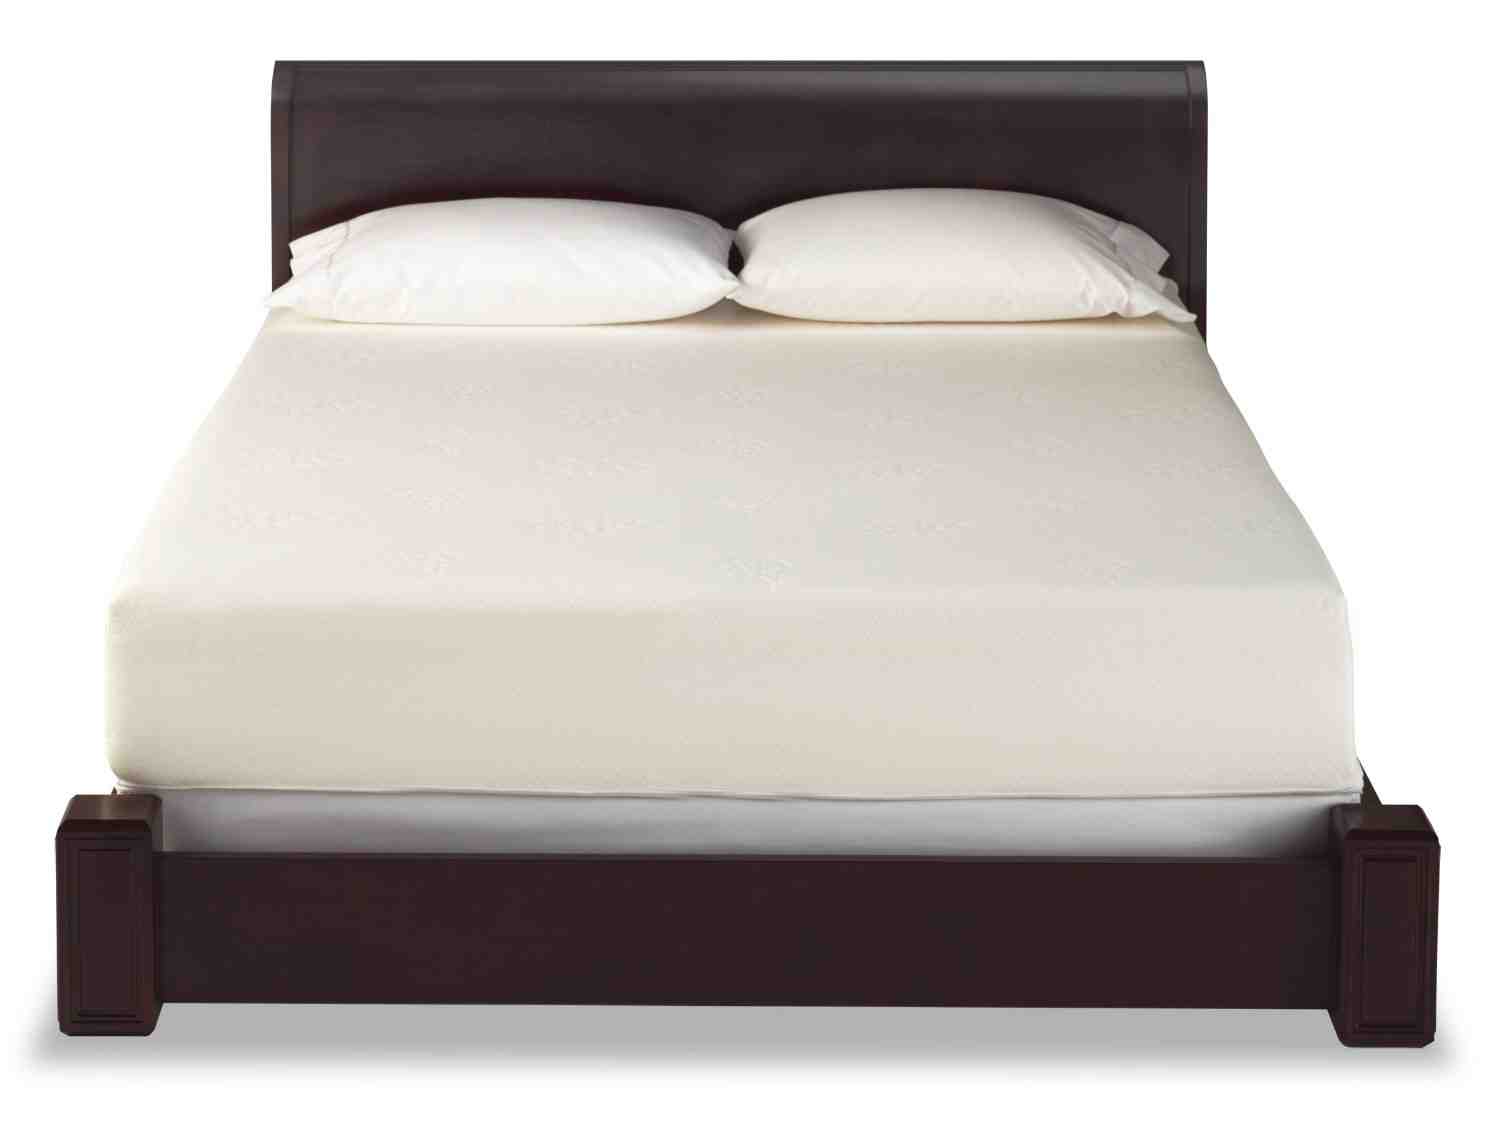 foam mattress for sale port elizabeth